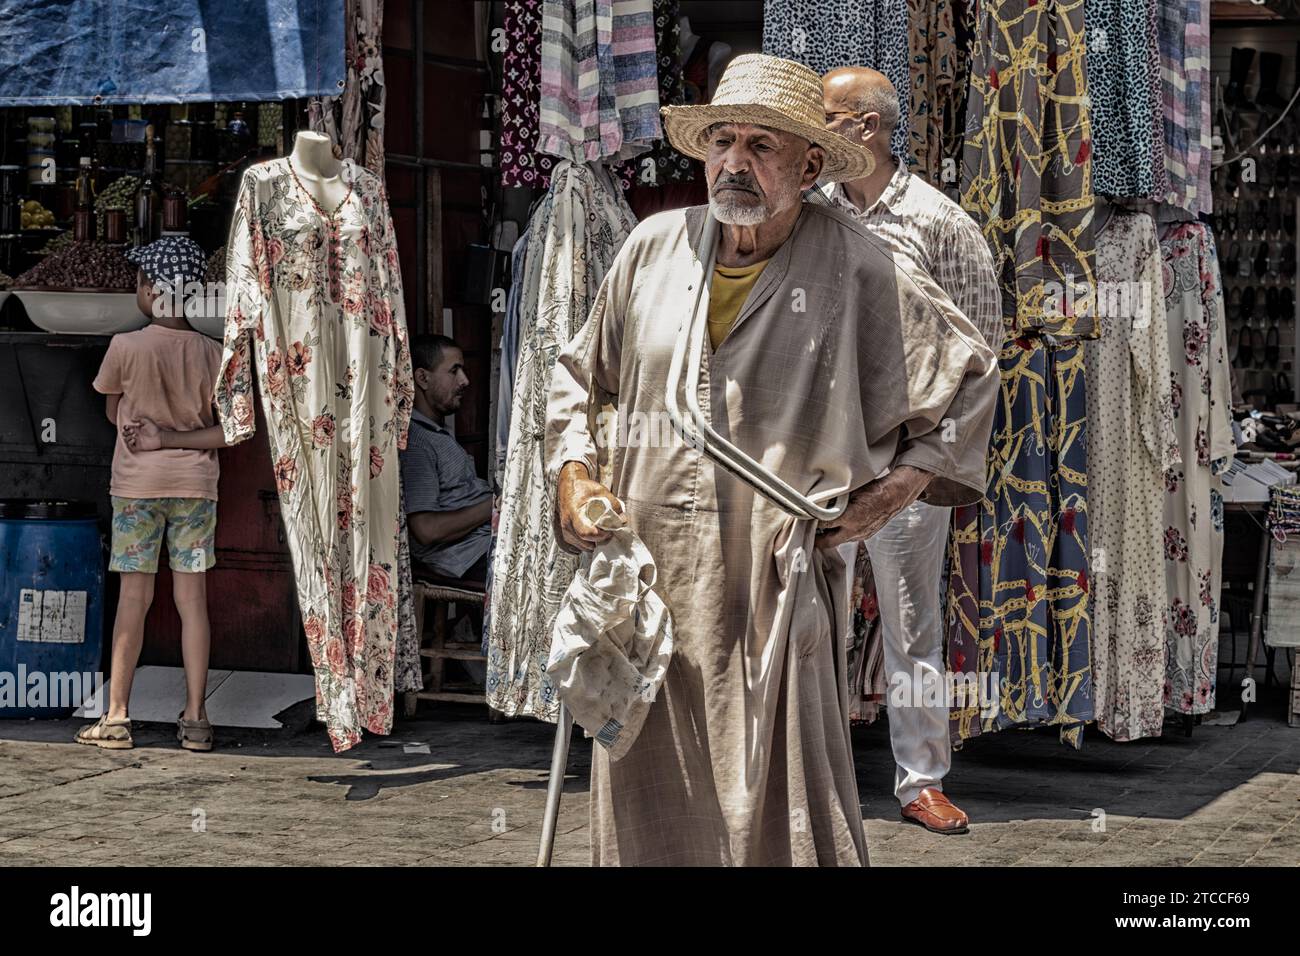 Marrakech, Maroc : Portrait d'un vieil homme marocain vêtu de vêtements traditionnels. Souk à l'intérieur de la Médina de Marrakech. Banque D'Images